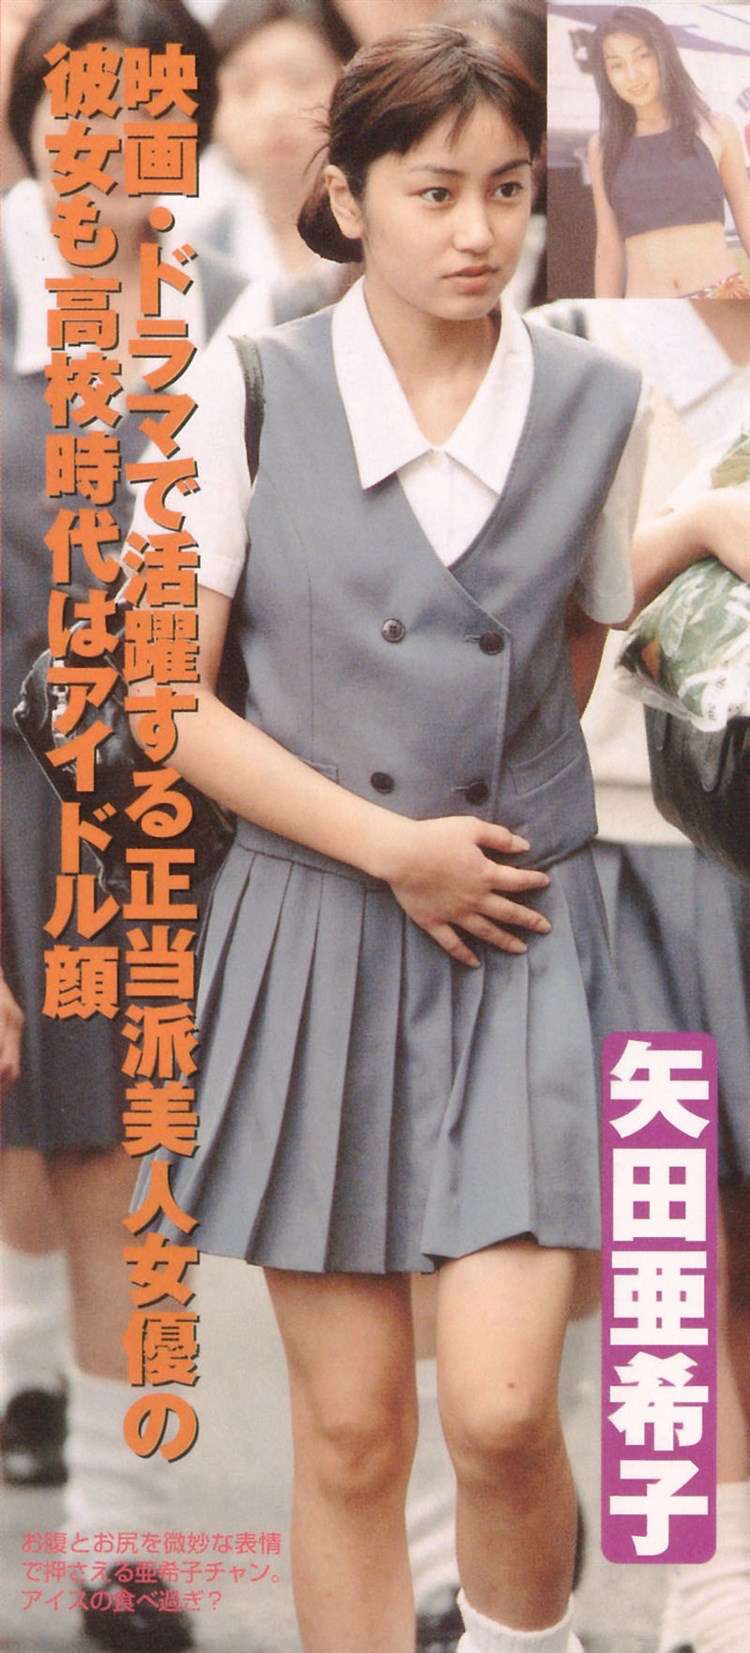 【矢田亜希子エロ画像】7年ぶりにグラビア撮影に挑んだベテラン美人女優 42